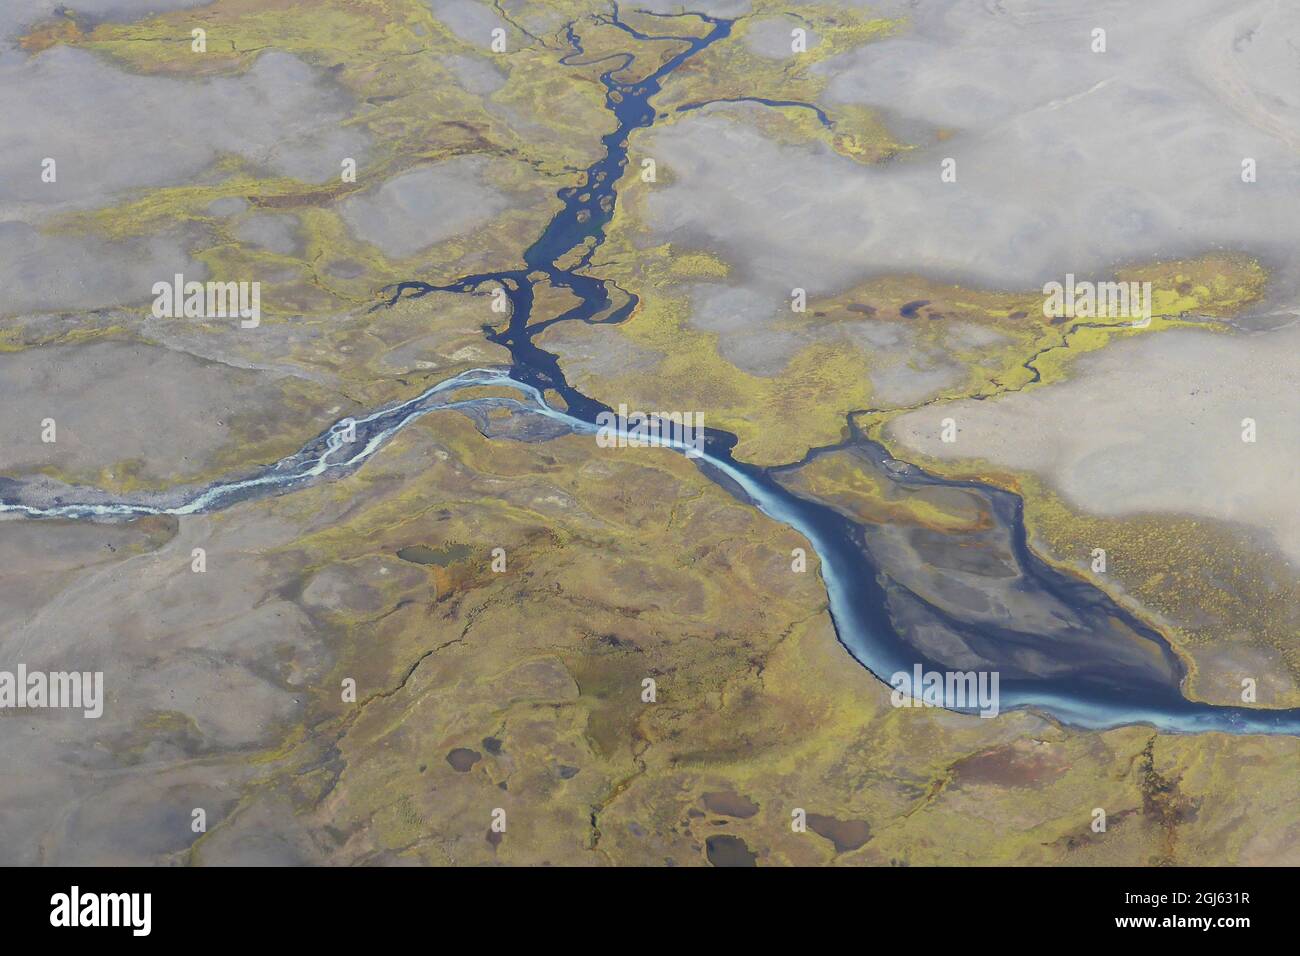 Fotografía aérea del río trenzado en Islandia, con dos colores de reunión de agua. Fondo de marrón y verde. Foto de stock